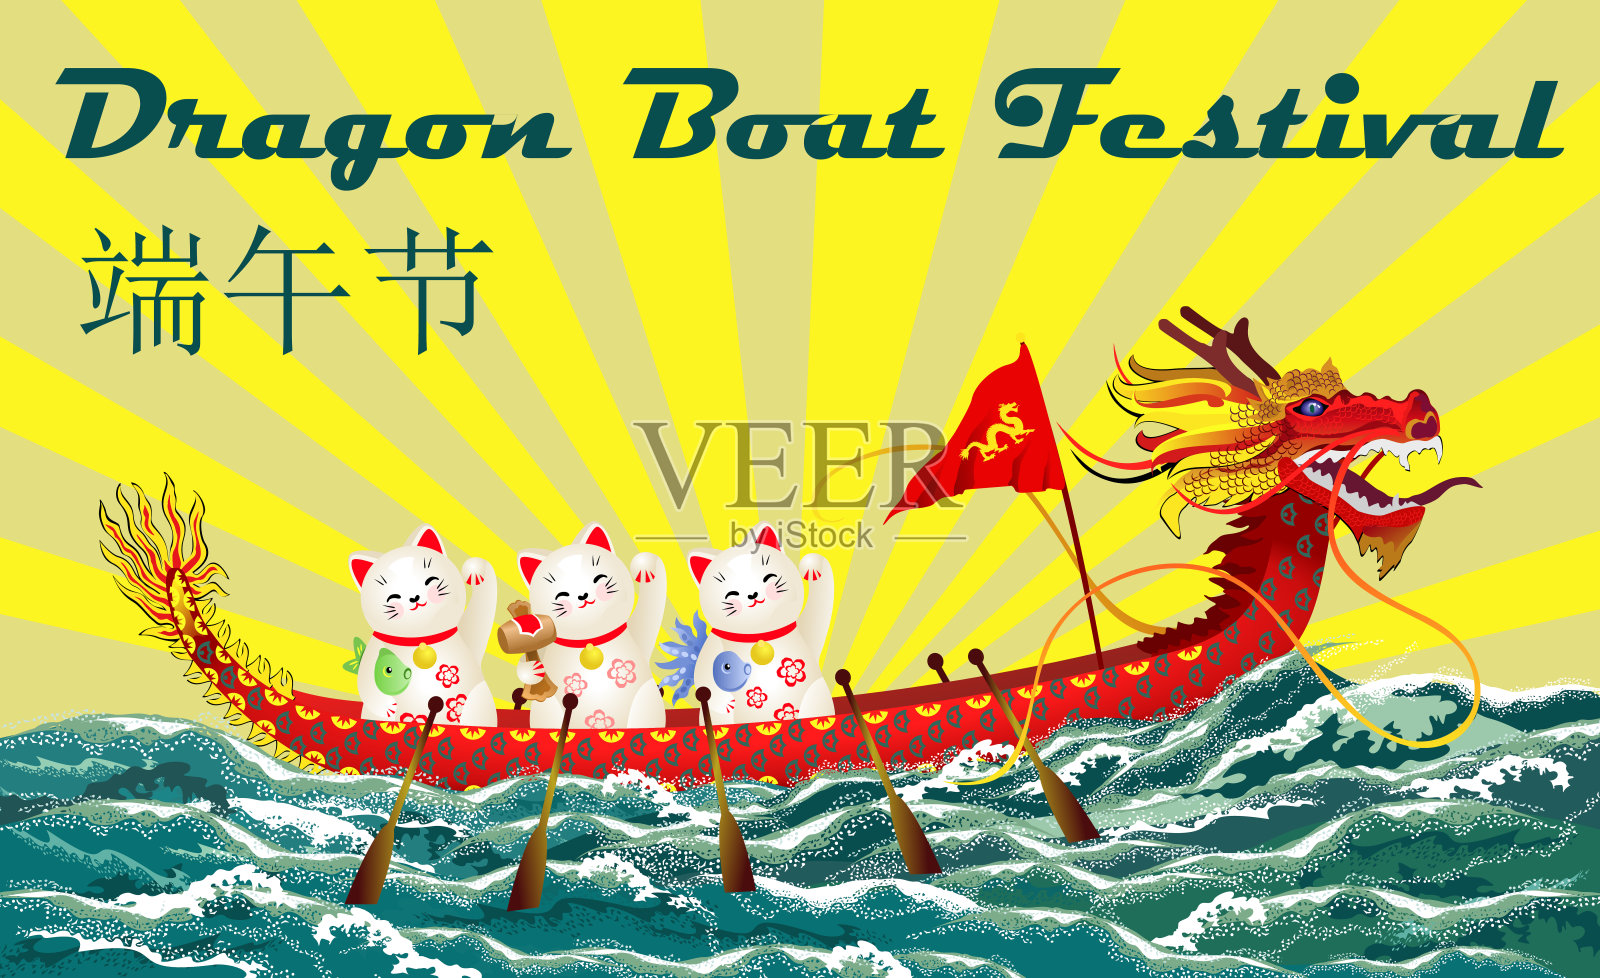 端午节(端午或端午节)。矢量插图的中国龙舟与日本幸运猫(maneki neko)在海浪和升起的太阳的背景。设计模板素材